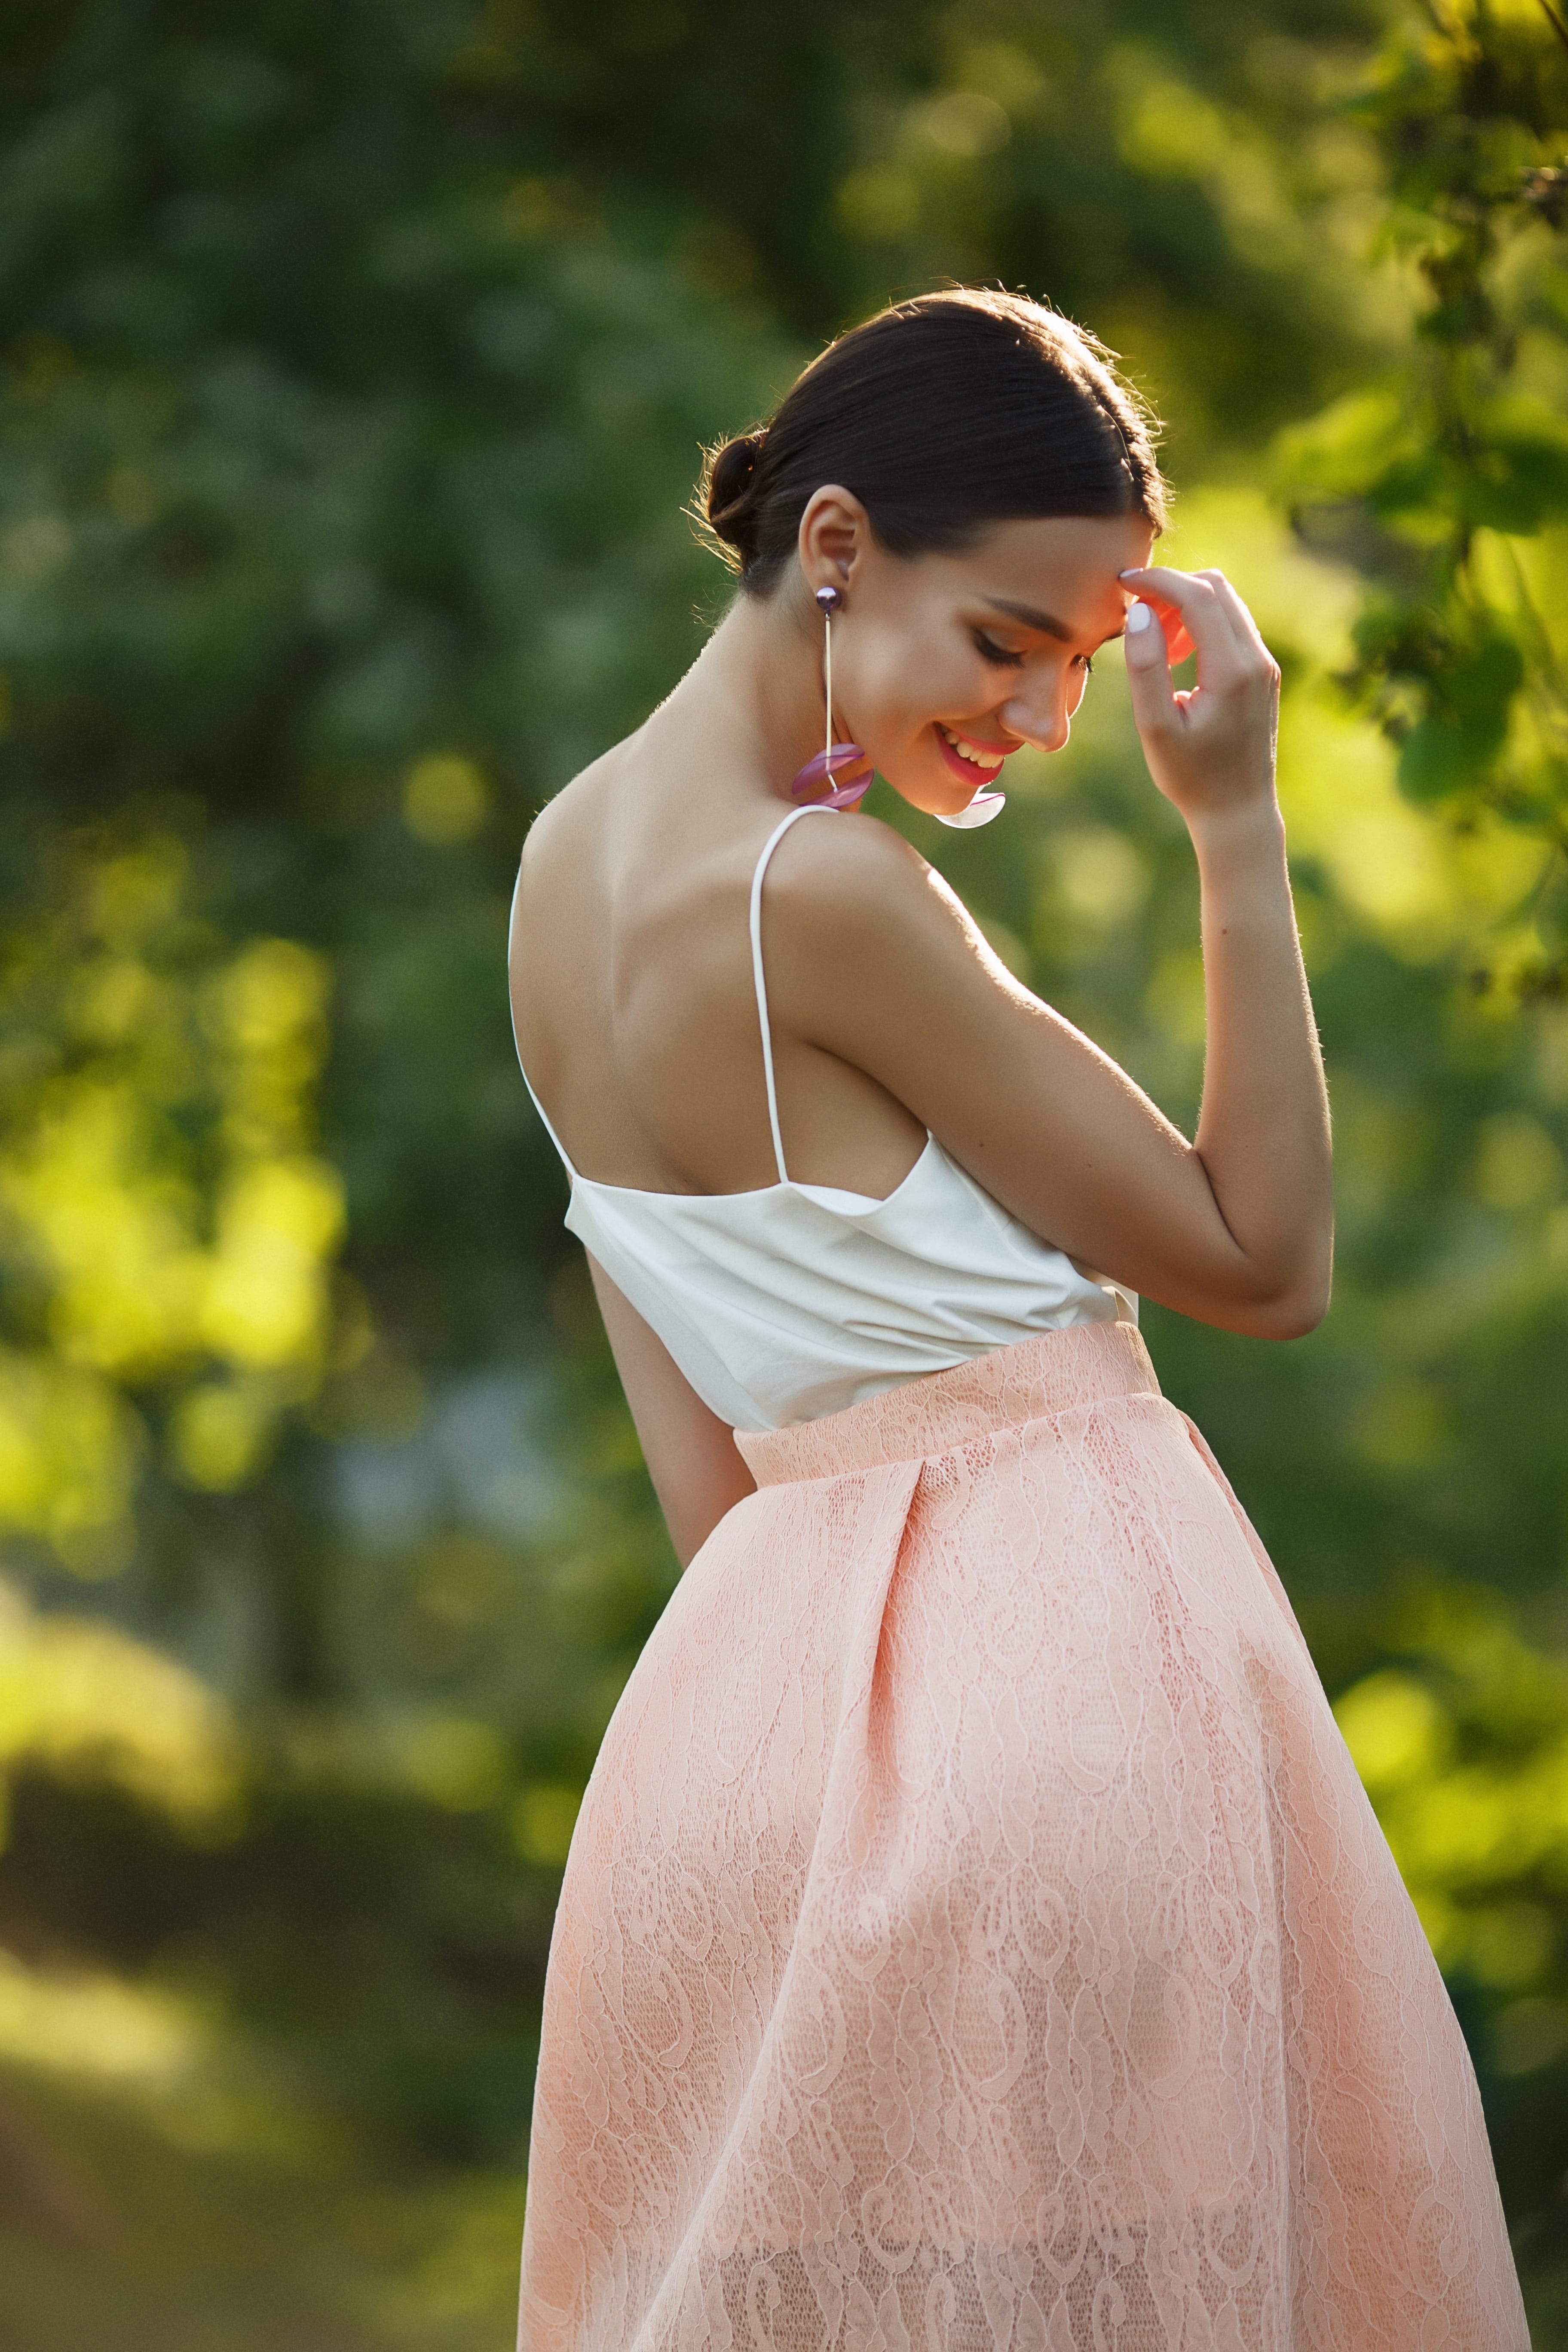 На Соломии молочный топ и юбка ажурная юбка #LOVE Фото: Денис Гурба Макияж и укладка салон красоты "Руки Ножницы"